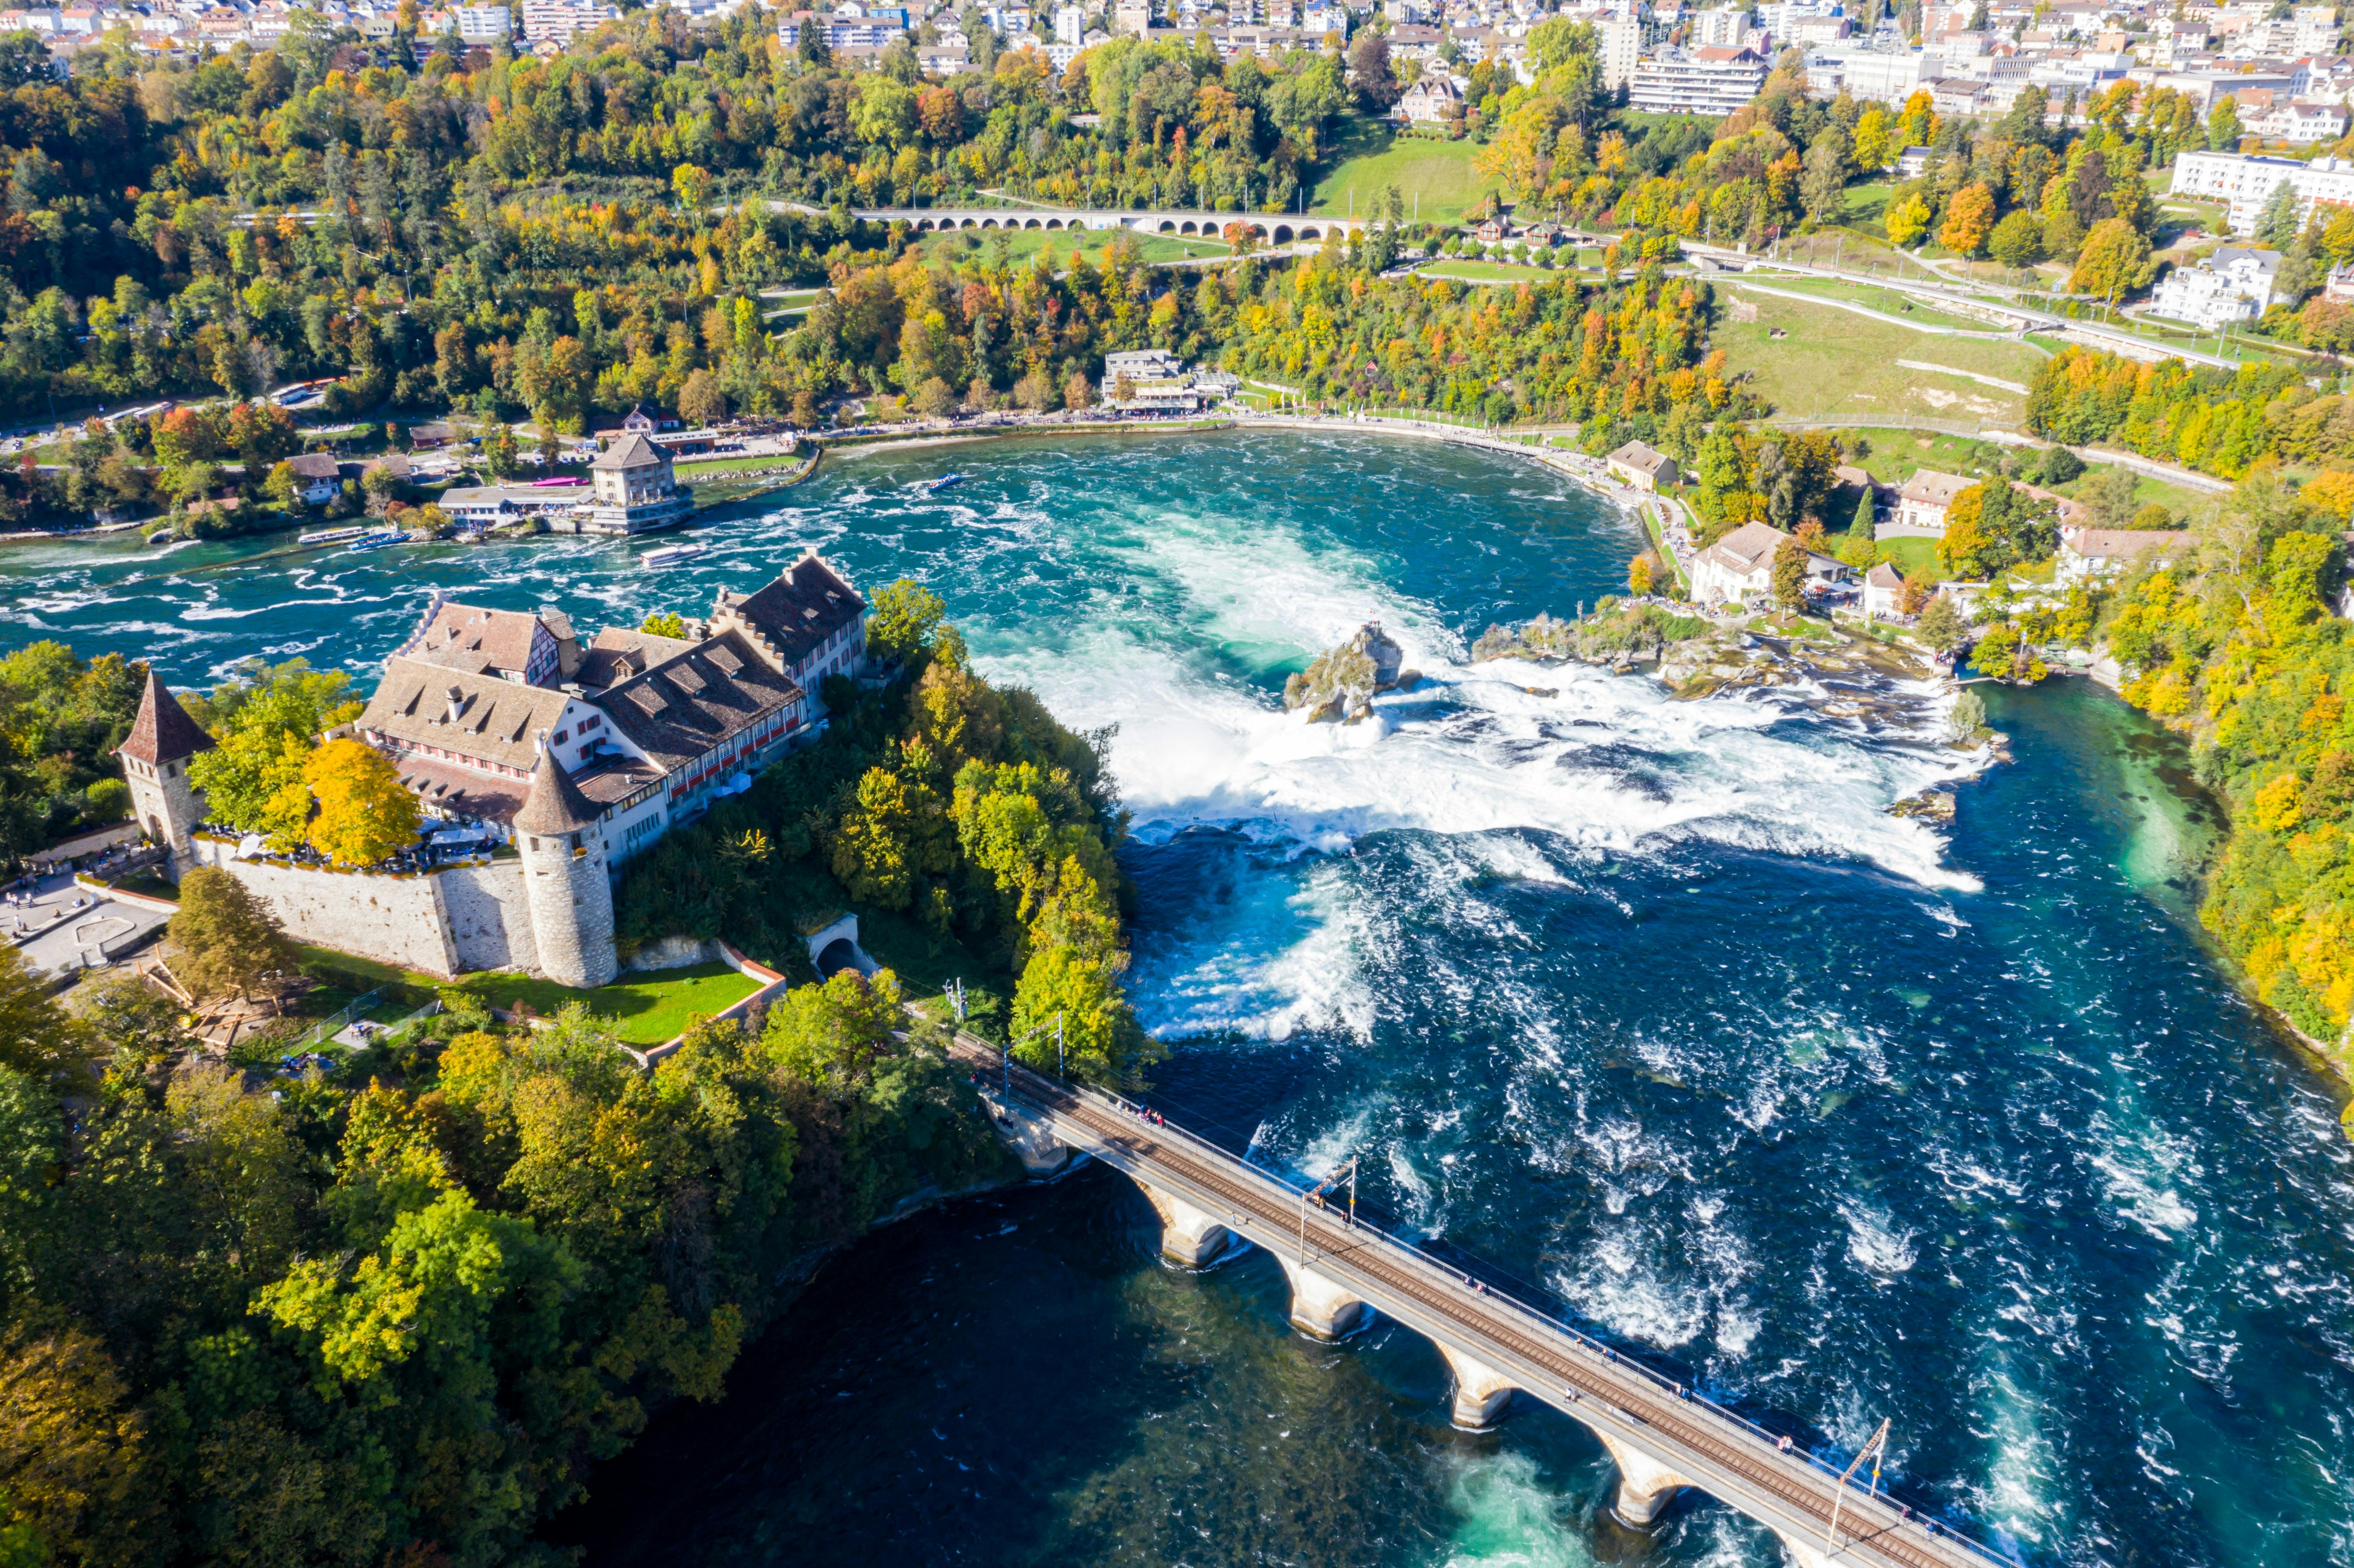 Rhine falls